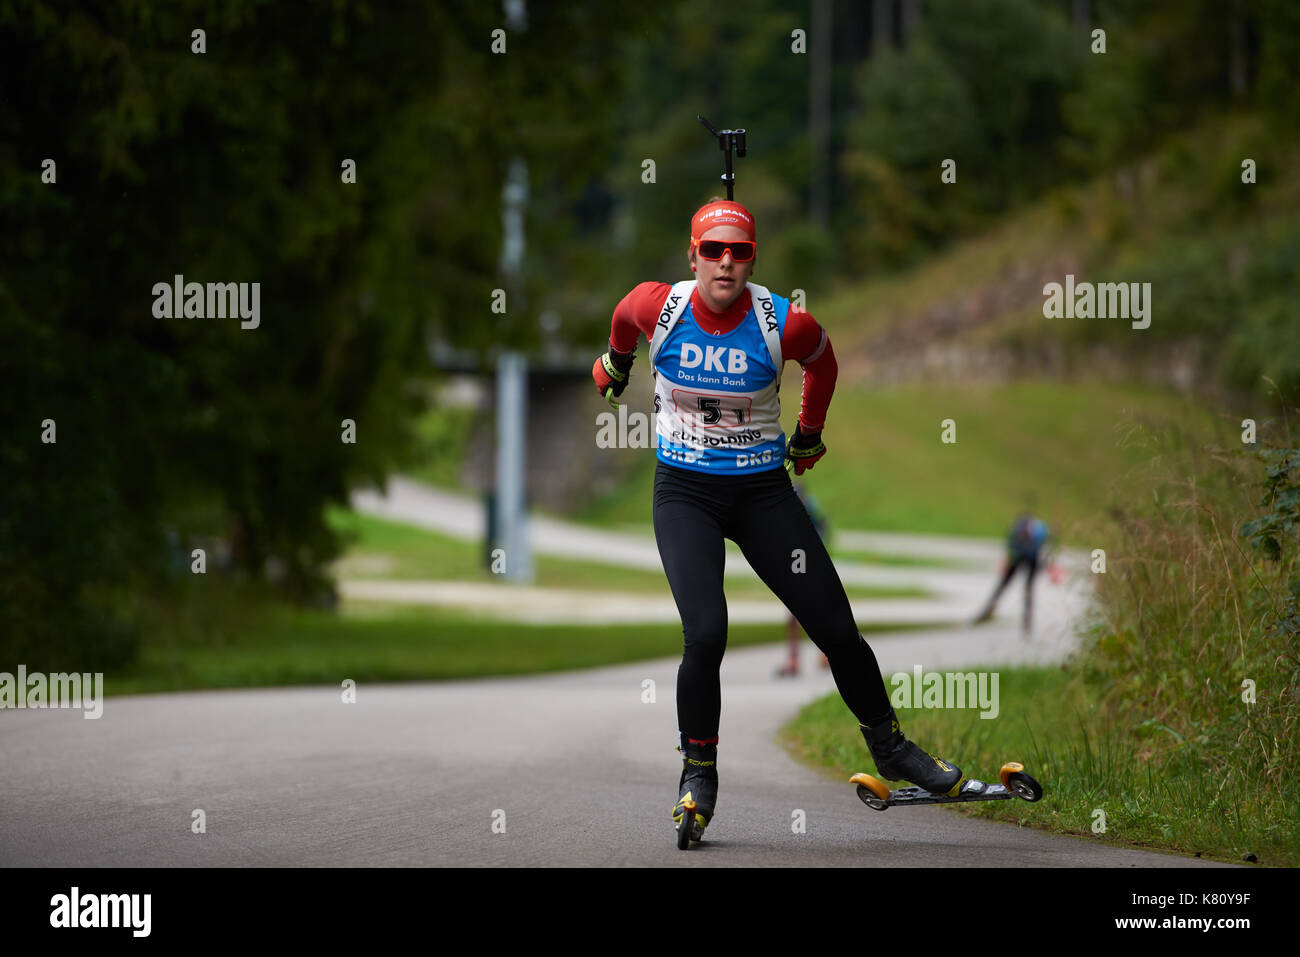 SCHNEIDER Sophia in action in the woman's relay biathlon competition, German Summer Championships, Staffelwettkampf Frauen 3x6 km, DEUTSCHE  BIATHLON MEISTERSCHAFT 2017 Stock Photo